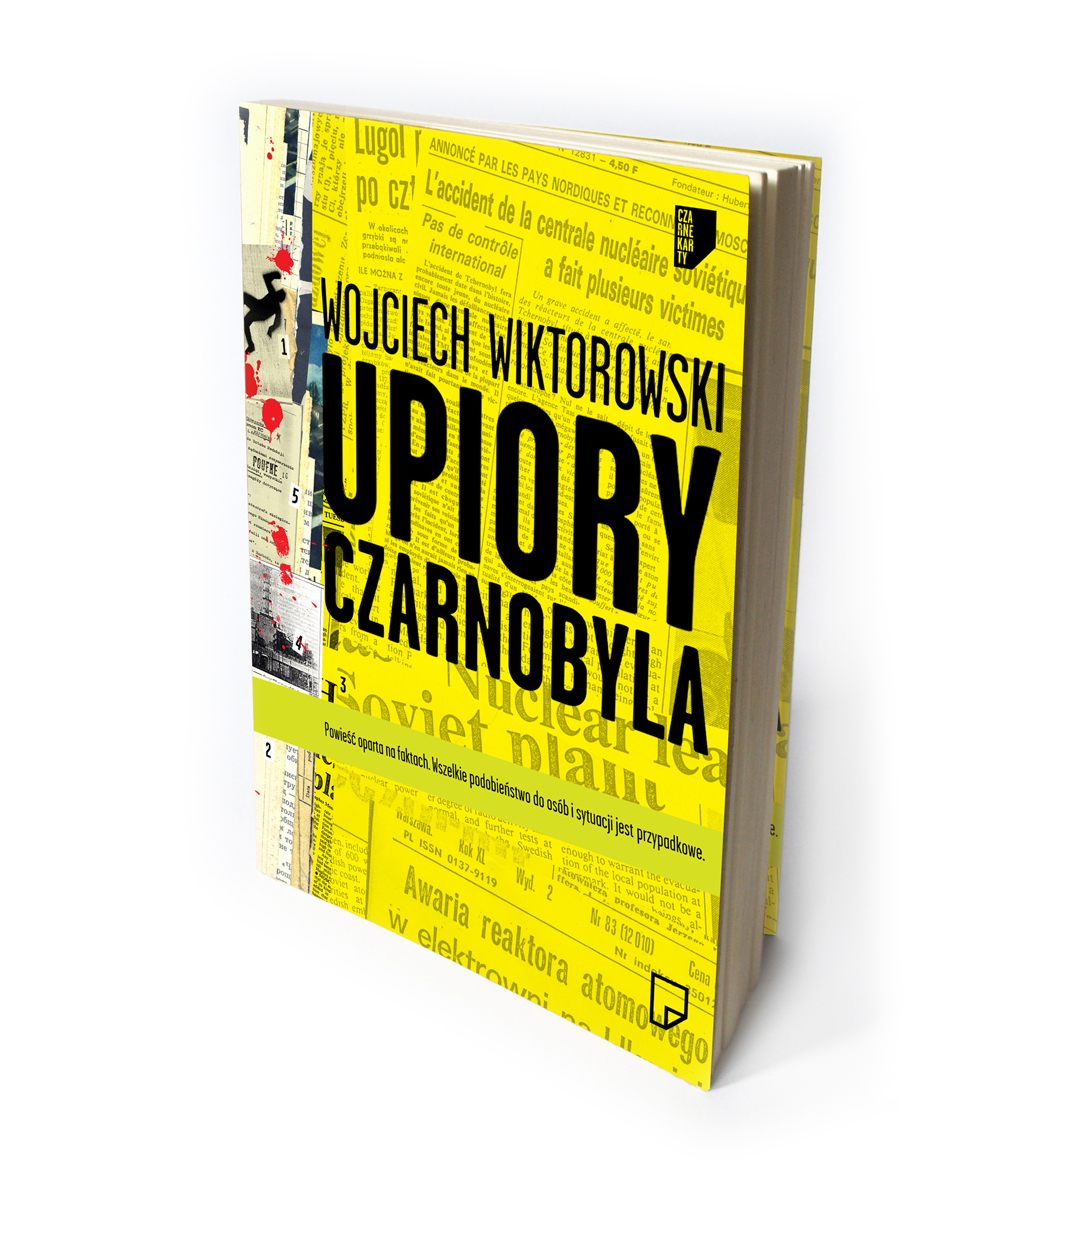 Okładka książki "Upiory Czarnobyla" (źródło: materiały prasowe wydawnictwa Marginesy)